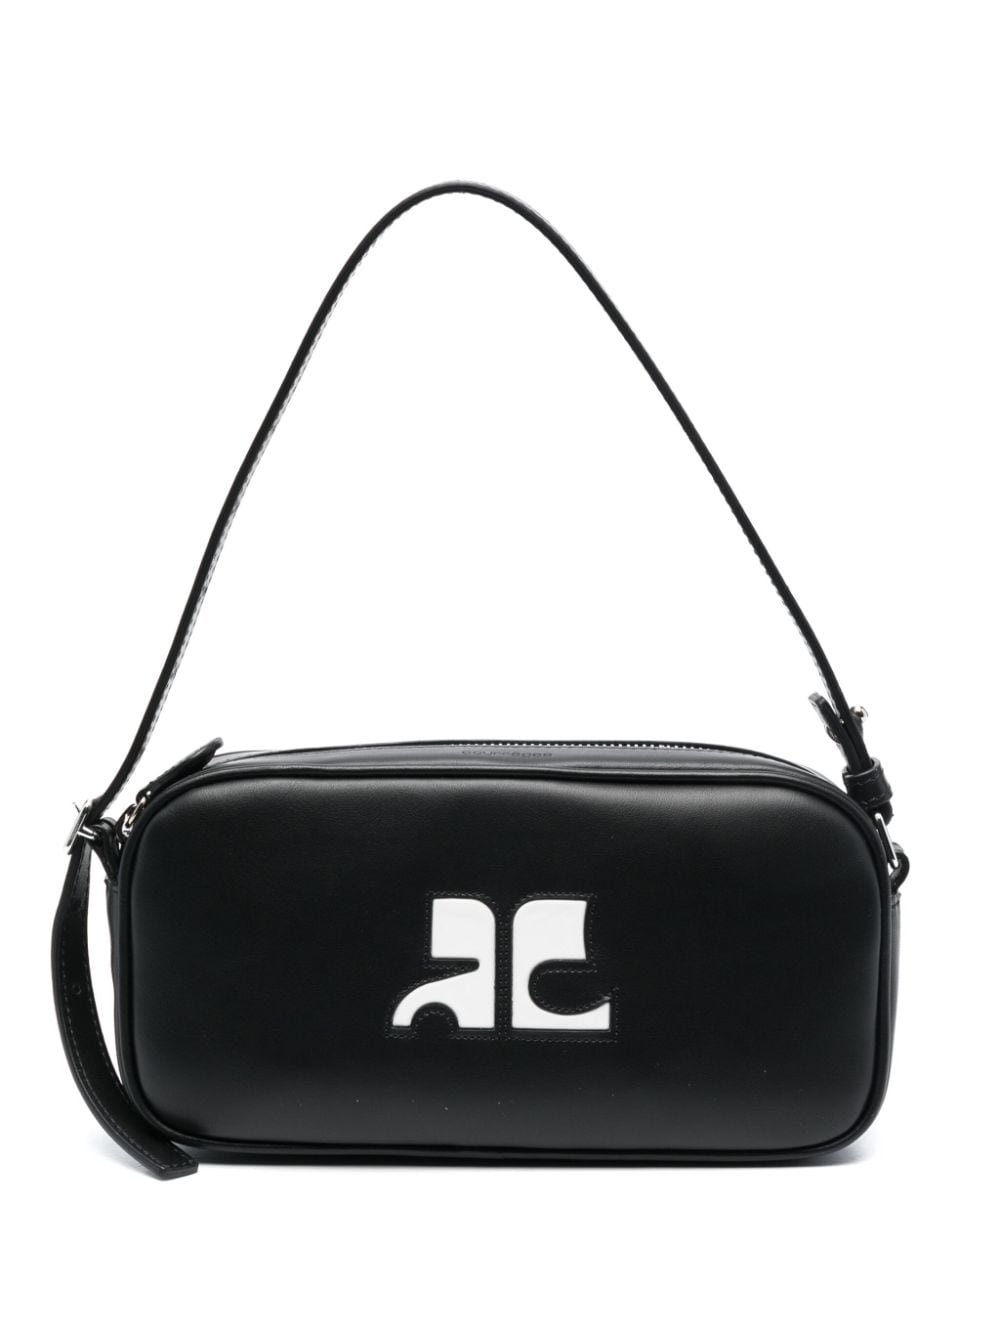 Courrèges Camera leather shoulder bag - Black von Courrèges